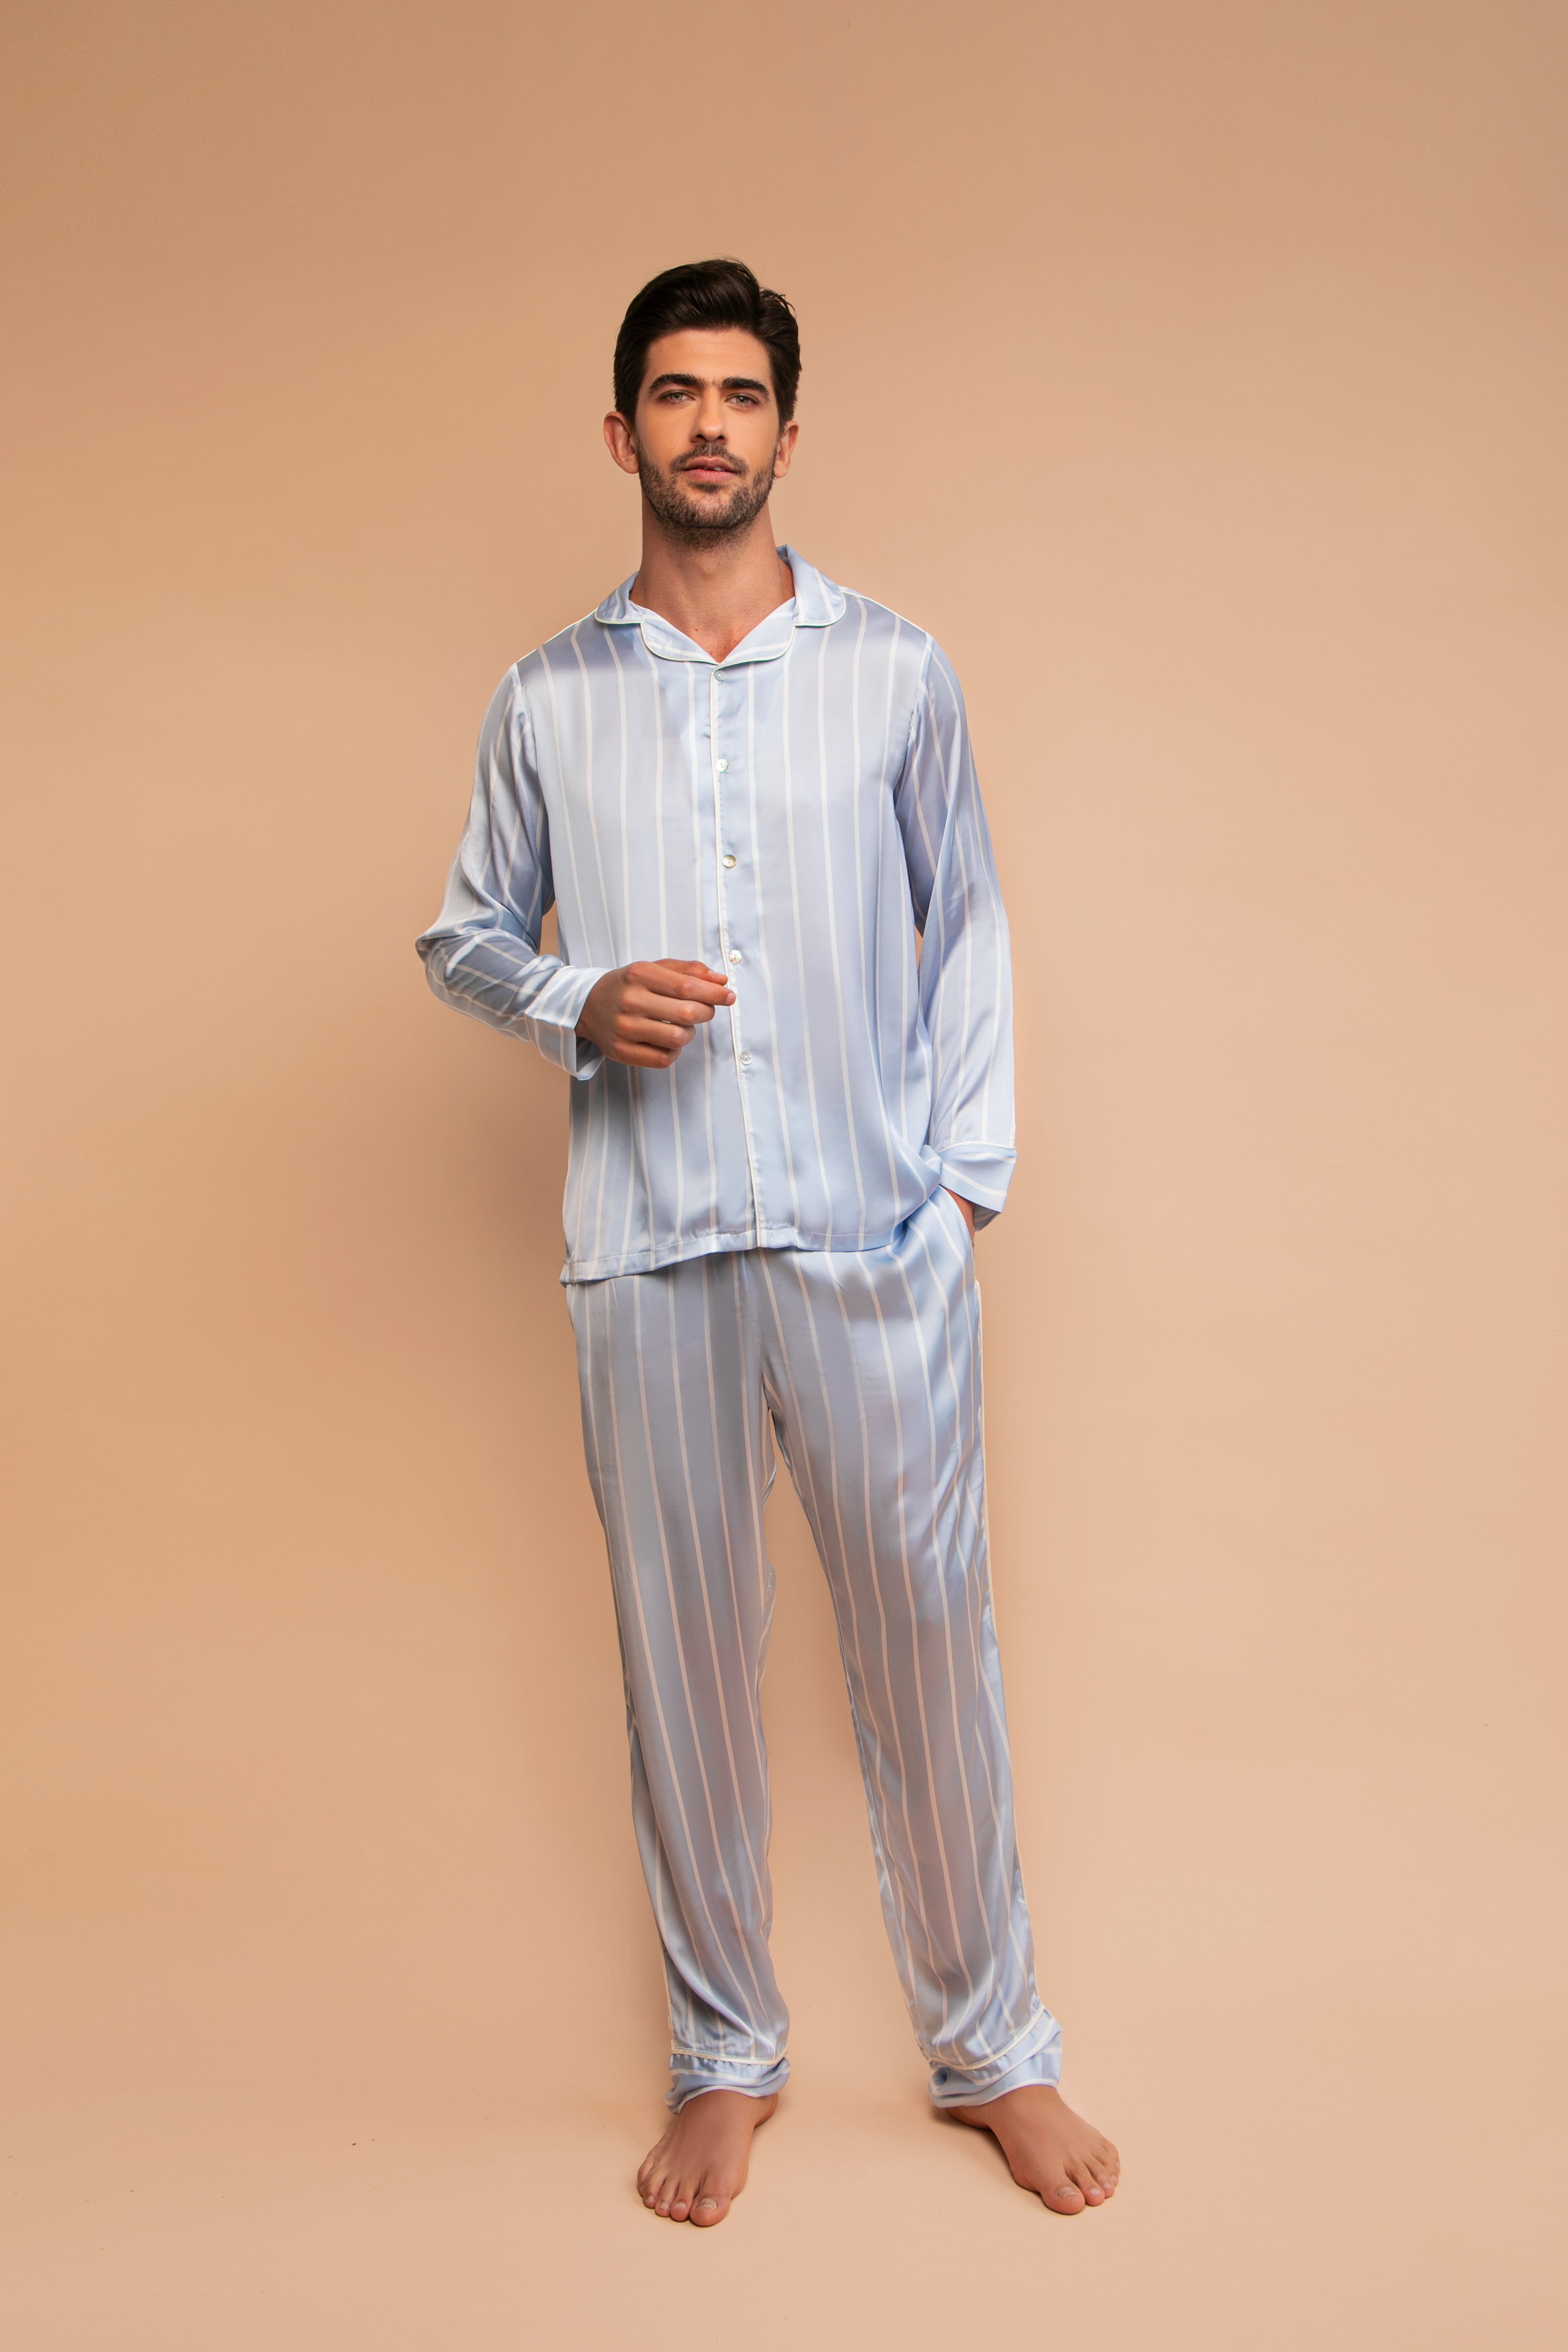 STJDM Camisón, conjunto de pijama fino de seda de hielo para hombre, pijama  con estampado de pijamas…Ver más STJDM Camisón, conjunto de pijama fino de